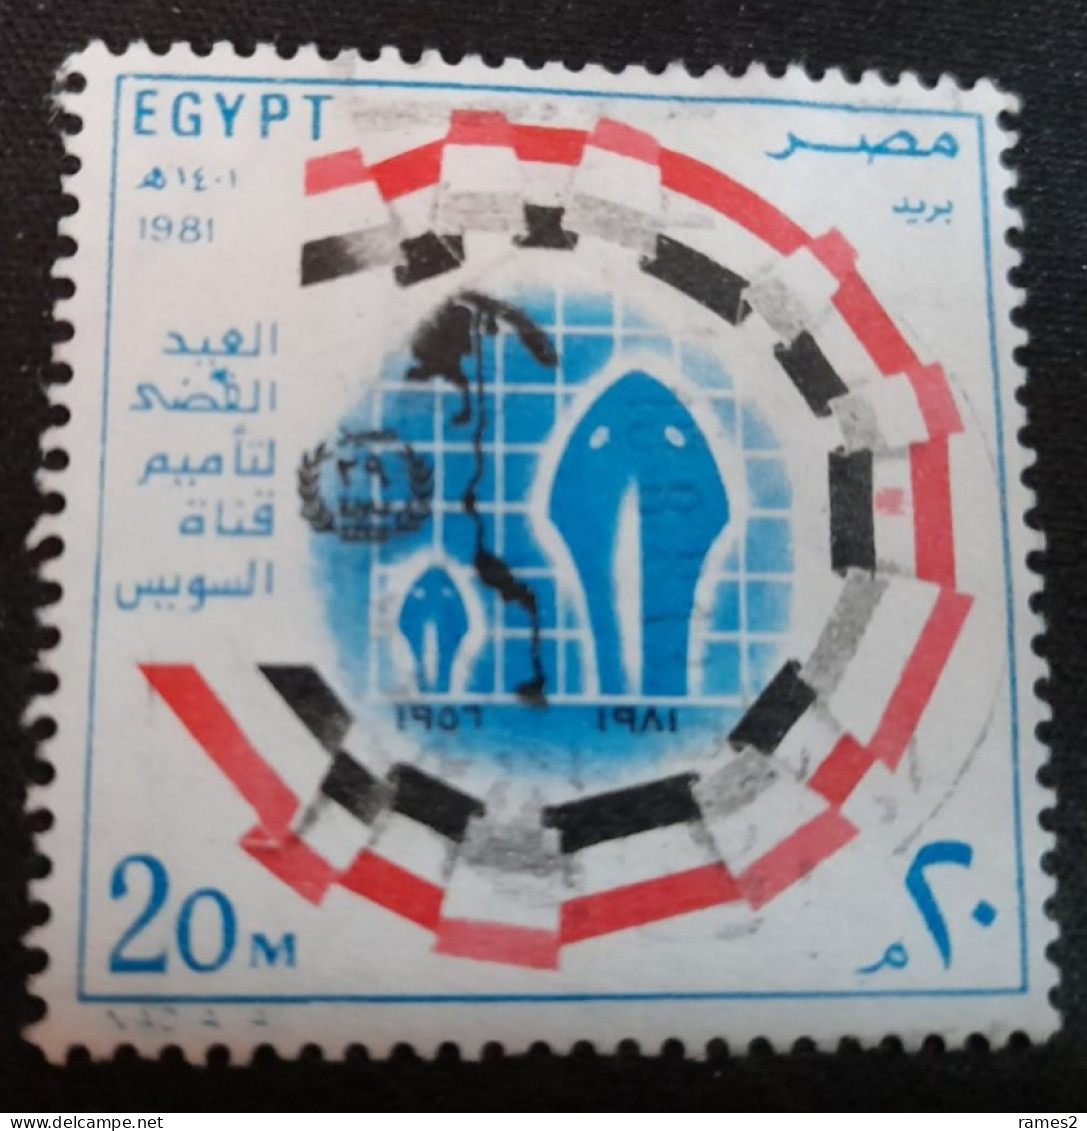 Egypte > 1953-.... République > 1980-89 > Oblitérés N° 1147 - Gebruikt